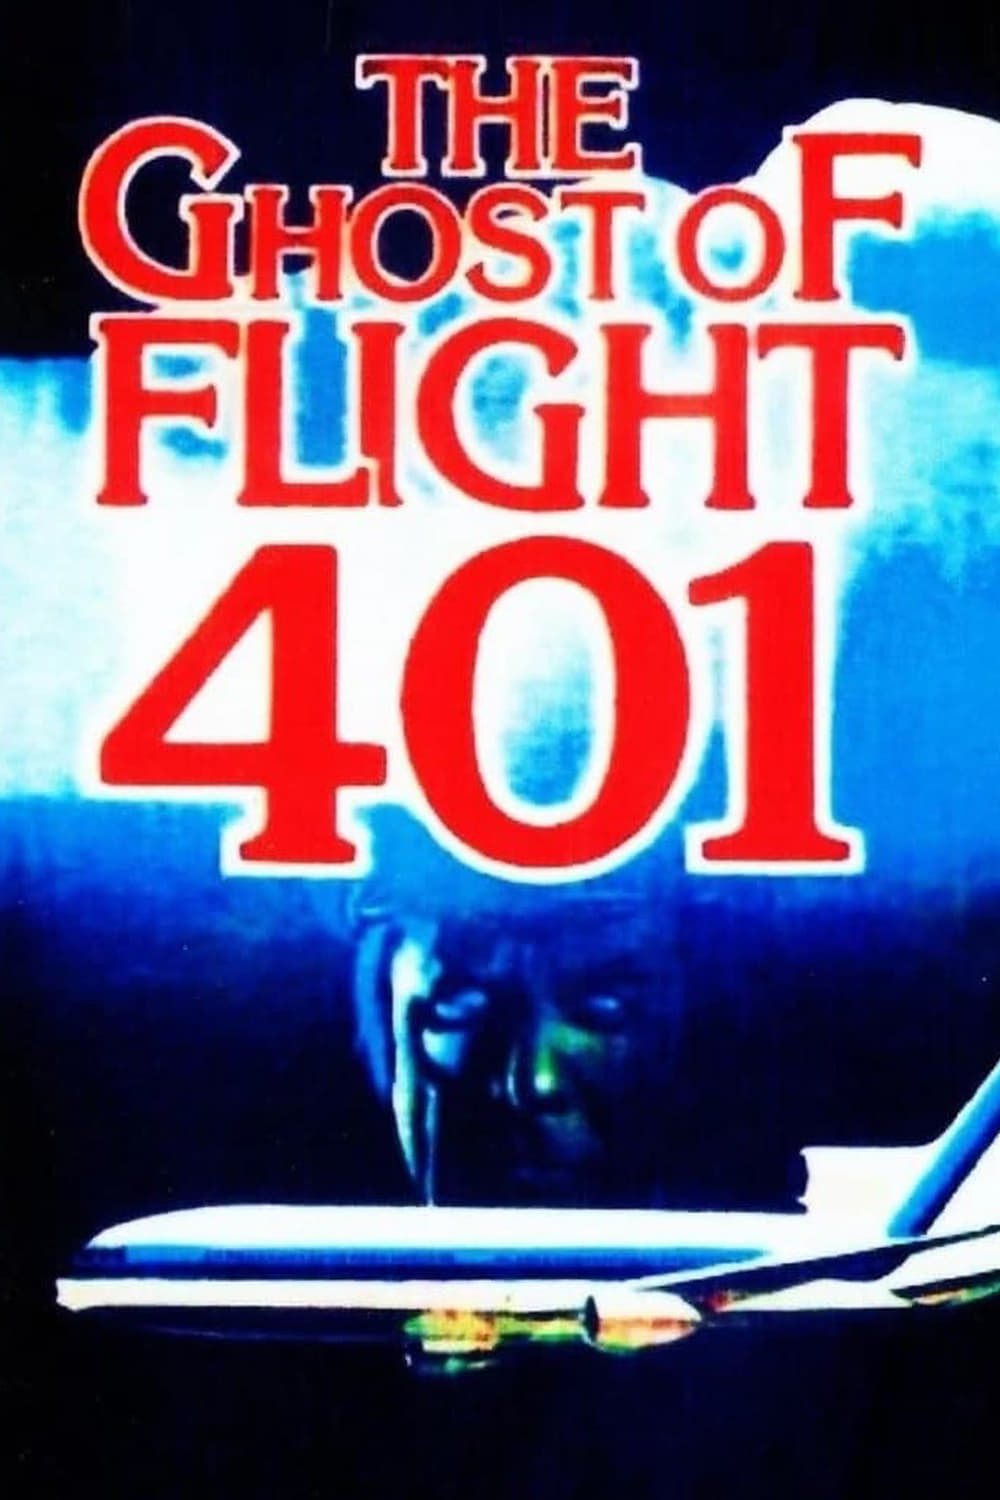 Le Fantôme du vol 401